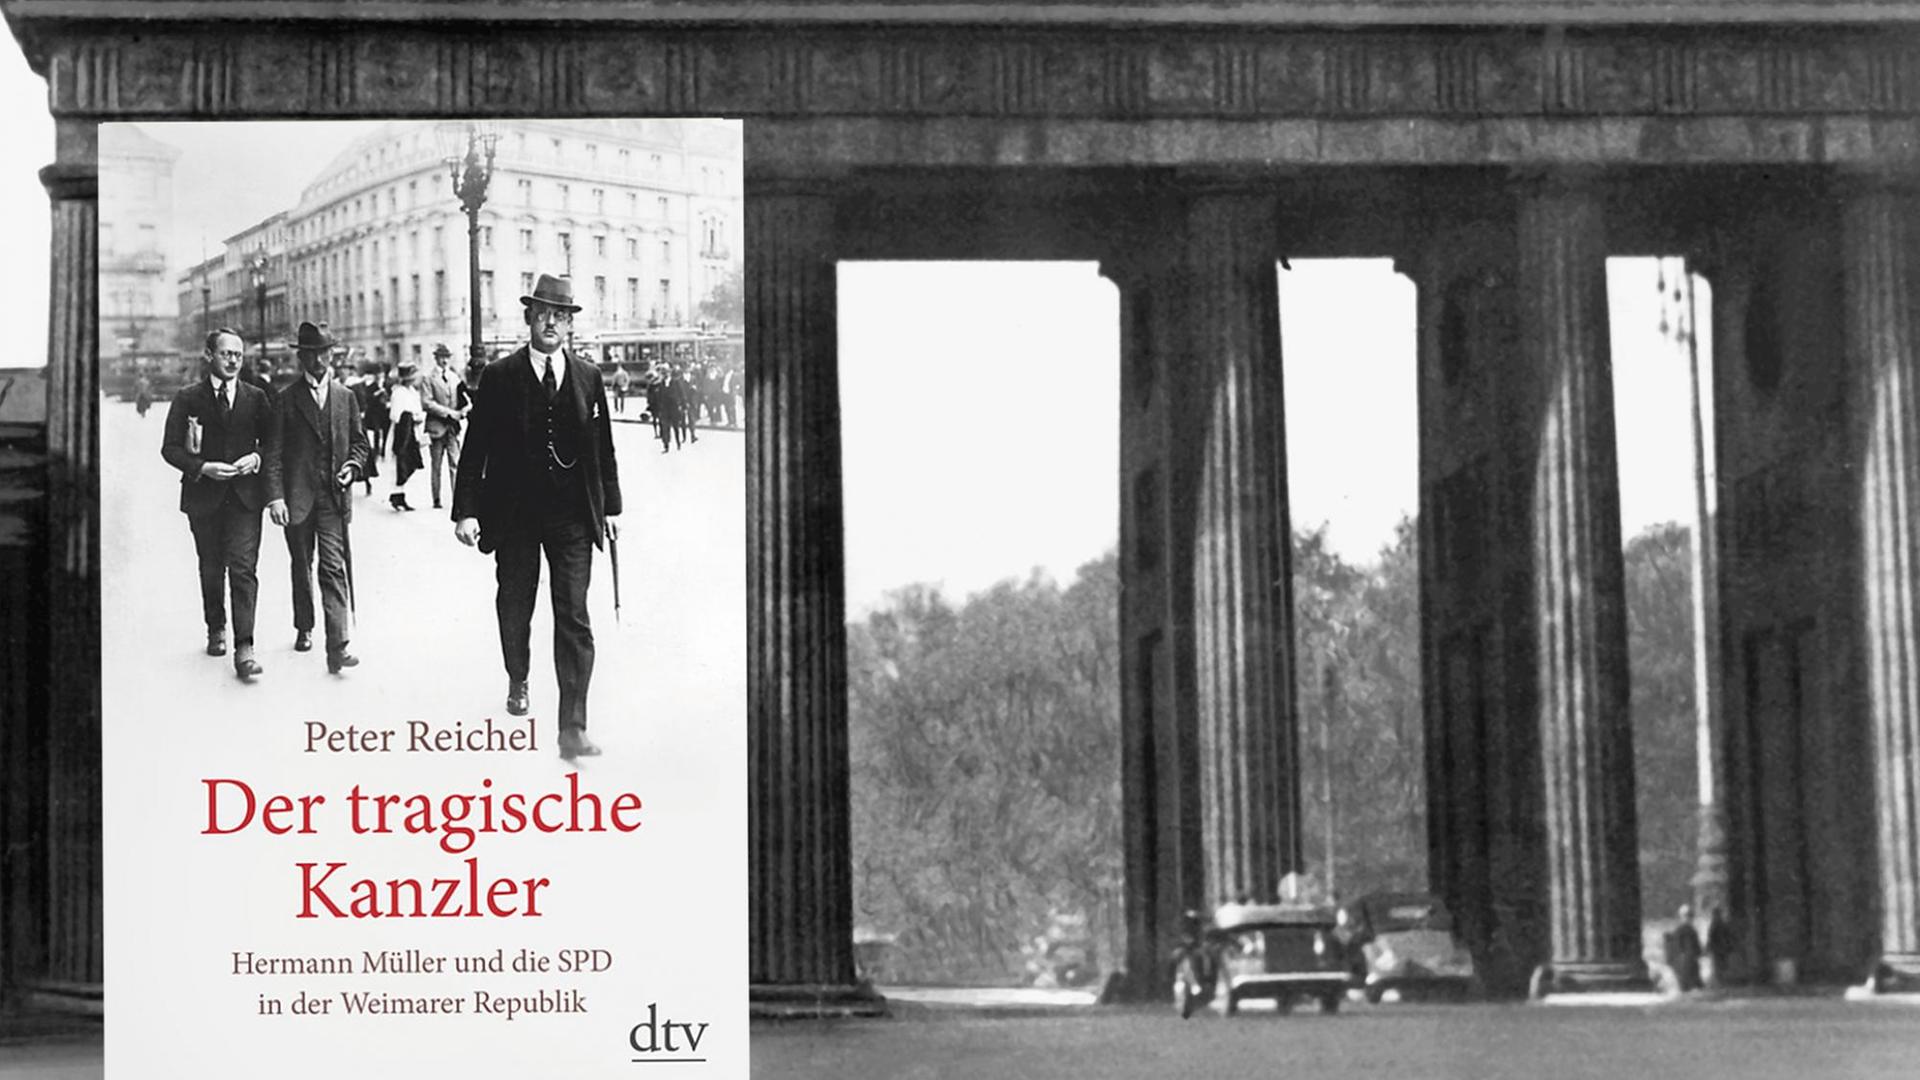 Das Brandenburger Tor im Herzen Berlins, das Wahrzeichen der Stadt, aufgenommen 1920